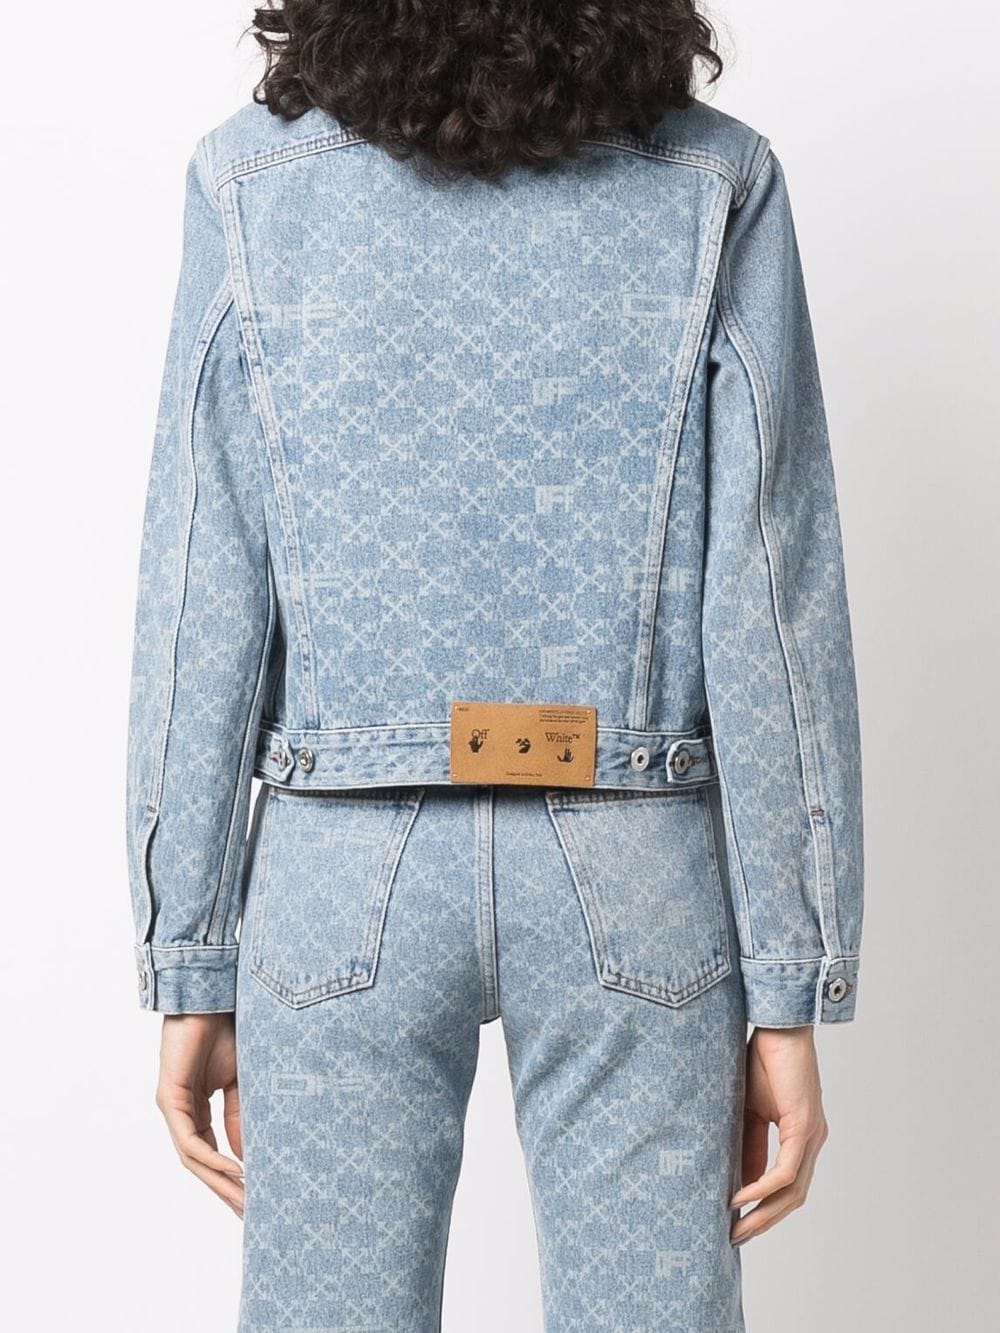 Louis Vuitton Monogram Print Jacket - Farfetch